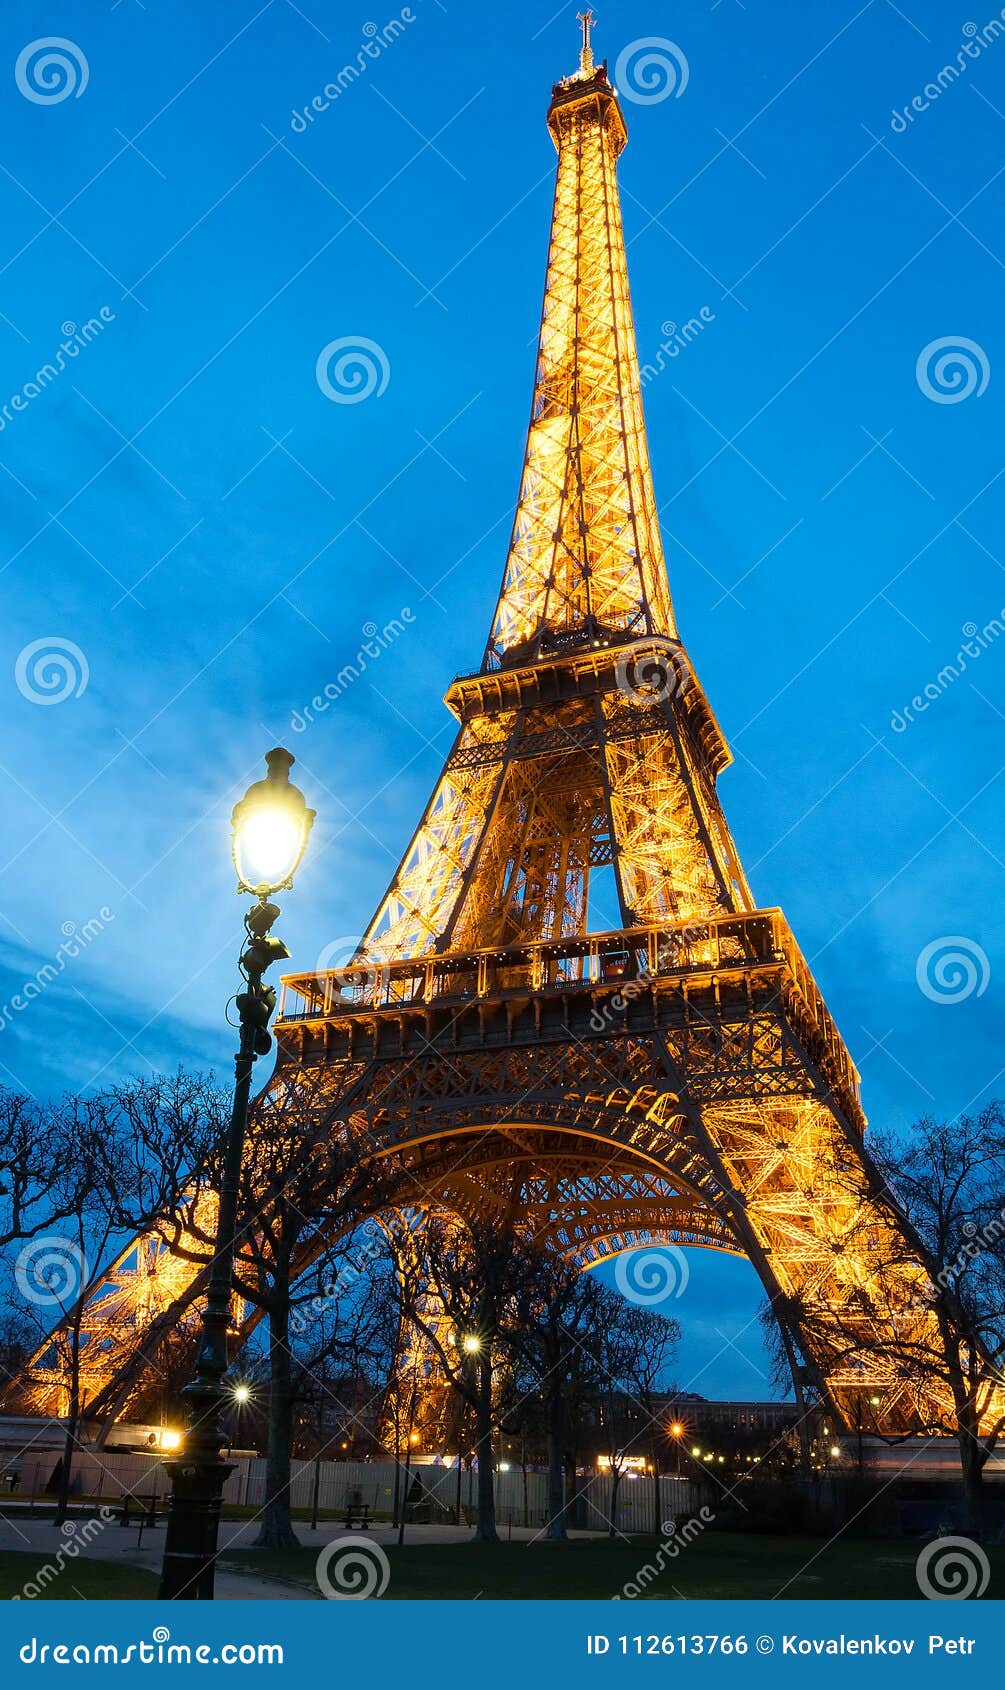 La Torre Eiffel Alla Notte A Parigi La Torre Eiffel Illuminata E Il Posto Di Viaggio Piu Popolare E L Icona Culturale Globale Fotografia Editoriale Immagine Di Europa Monumento